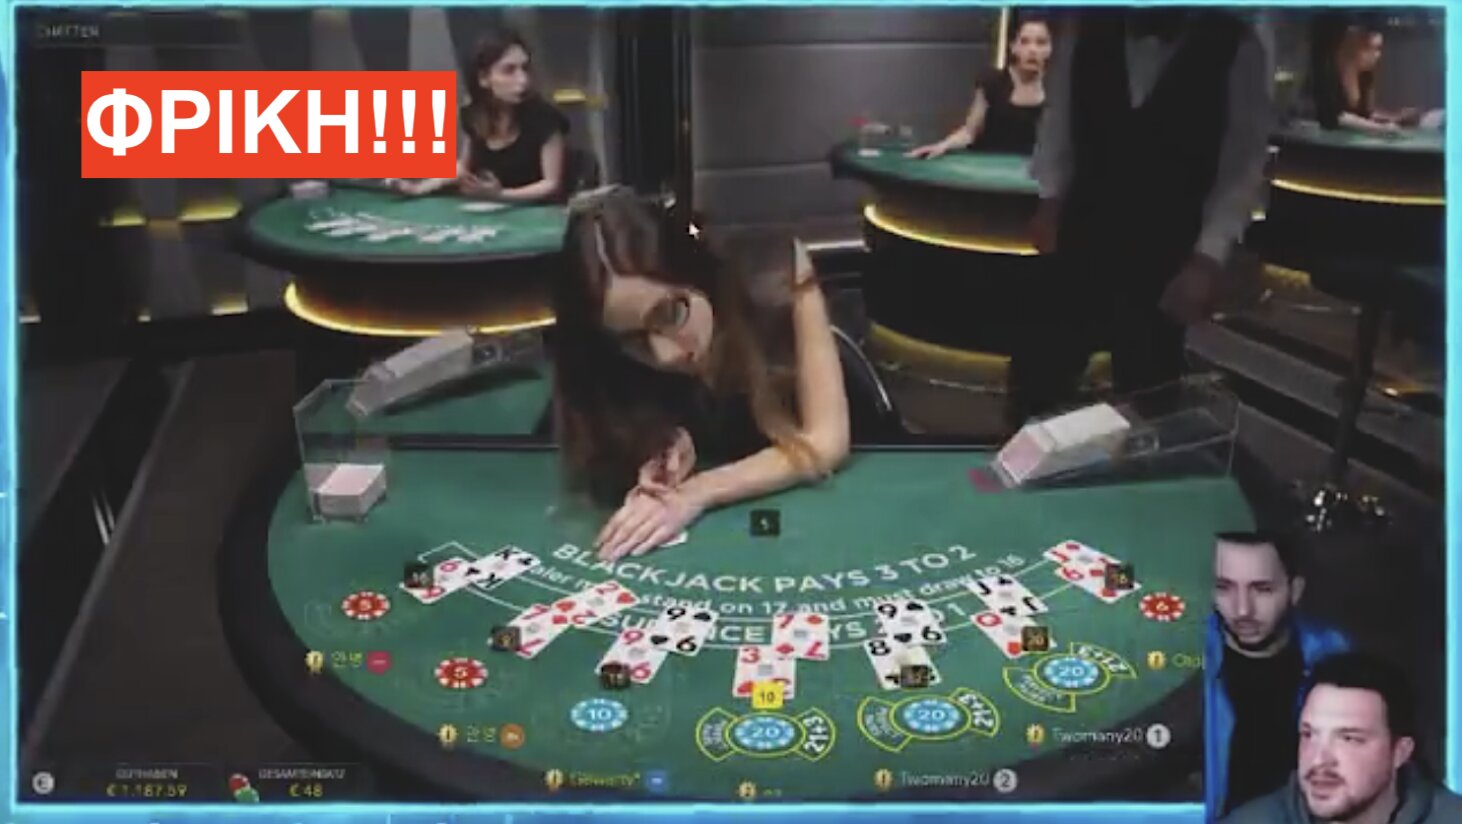 Βίντεο-σοκ: Λιποθύμησε πάνω από το τραπέζι πόκερ την ώρα που ήταν σε εξέλιξη το παιχνίδι λόγω του…ΕΜΒΟΛΙΟΥ COVID!!!